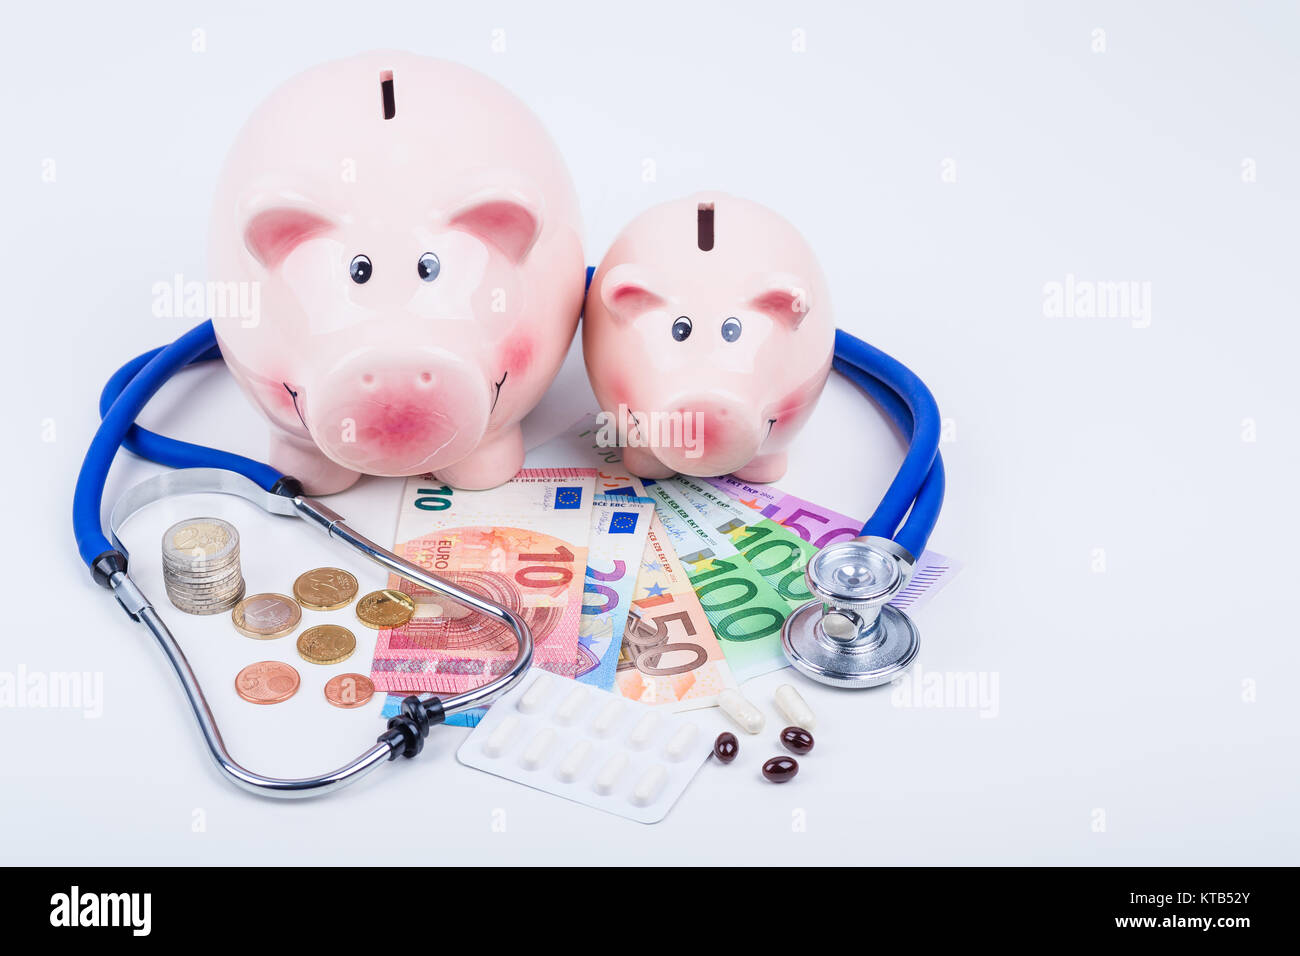 Sparschweine mit Geld,Medikamenten und Stethoskop Stock Photo